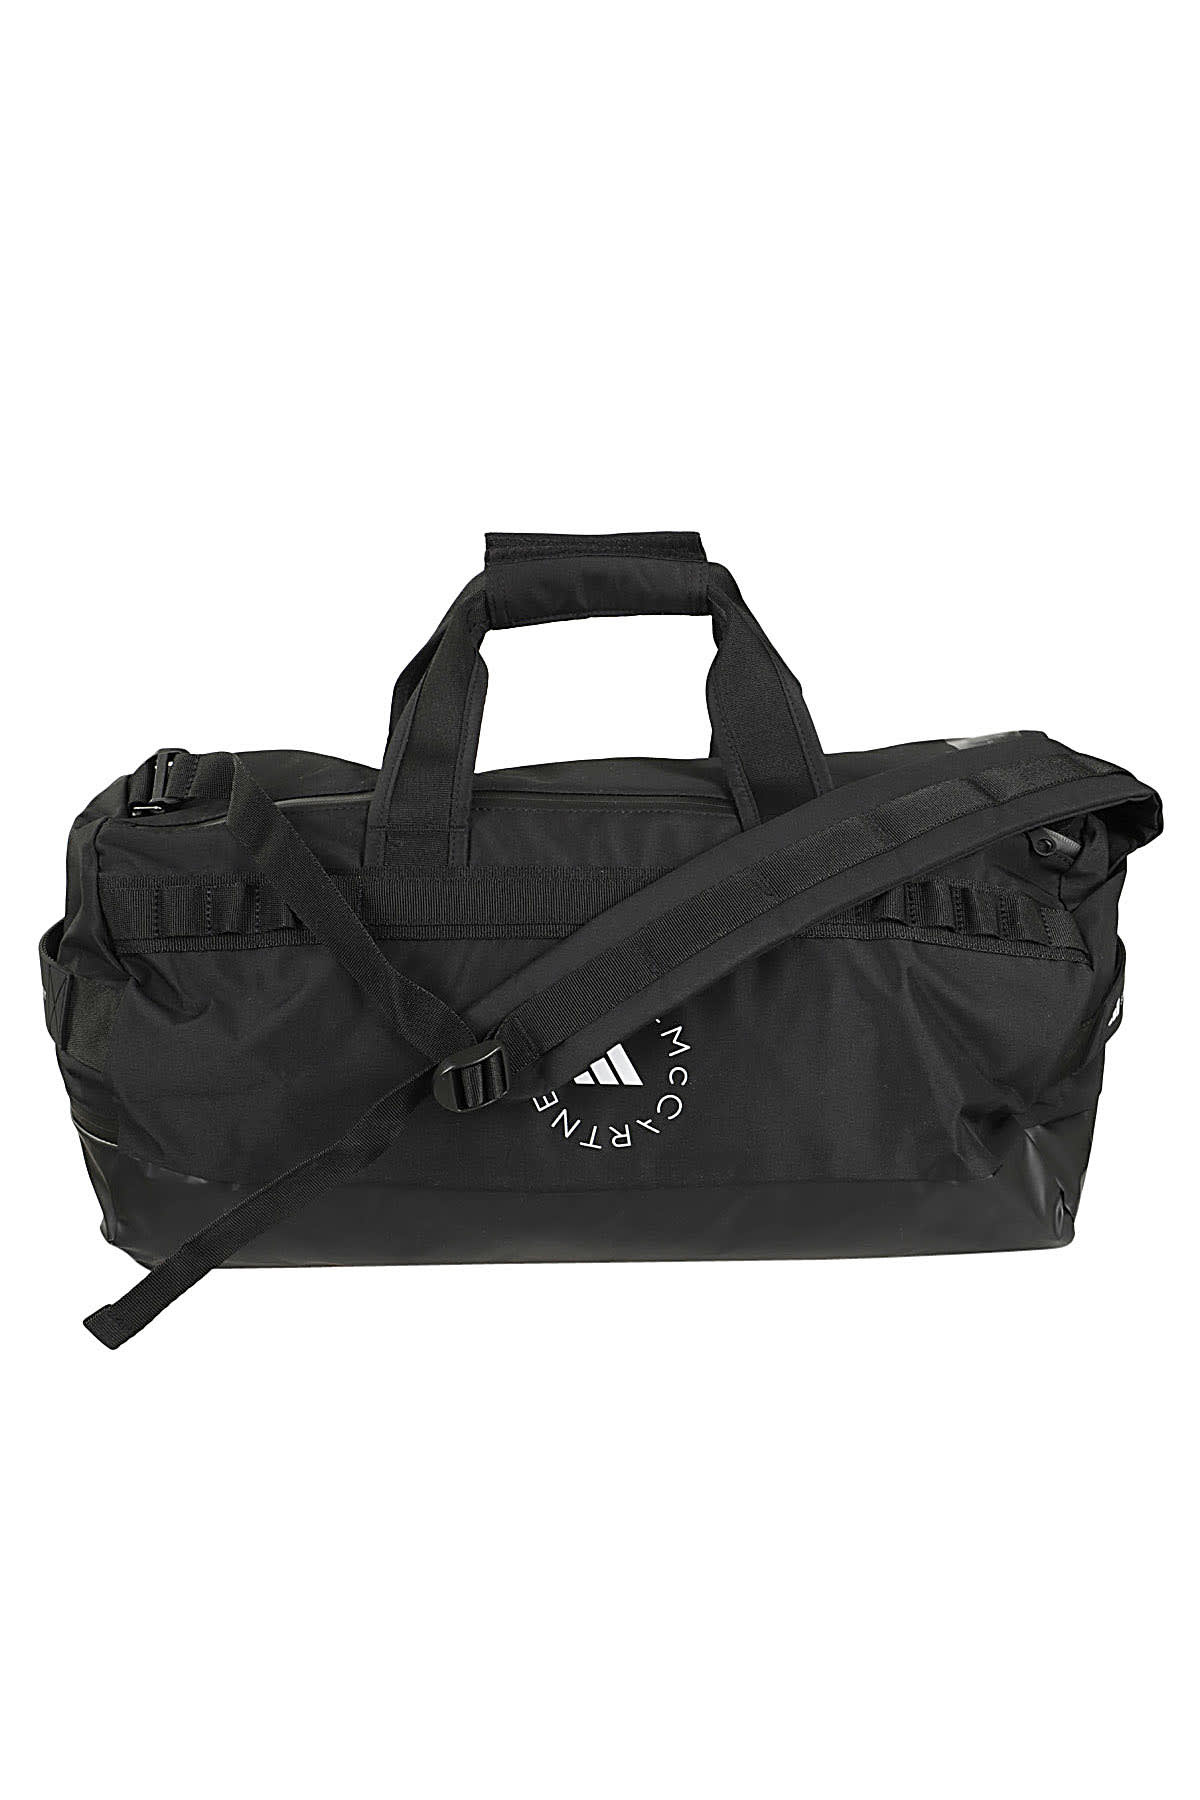 Shop Adidas By Stella Mccartney Bag In Black